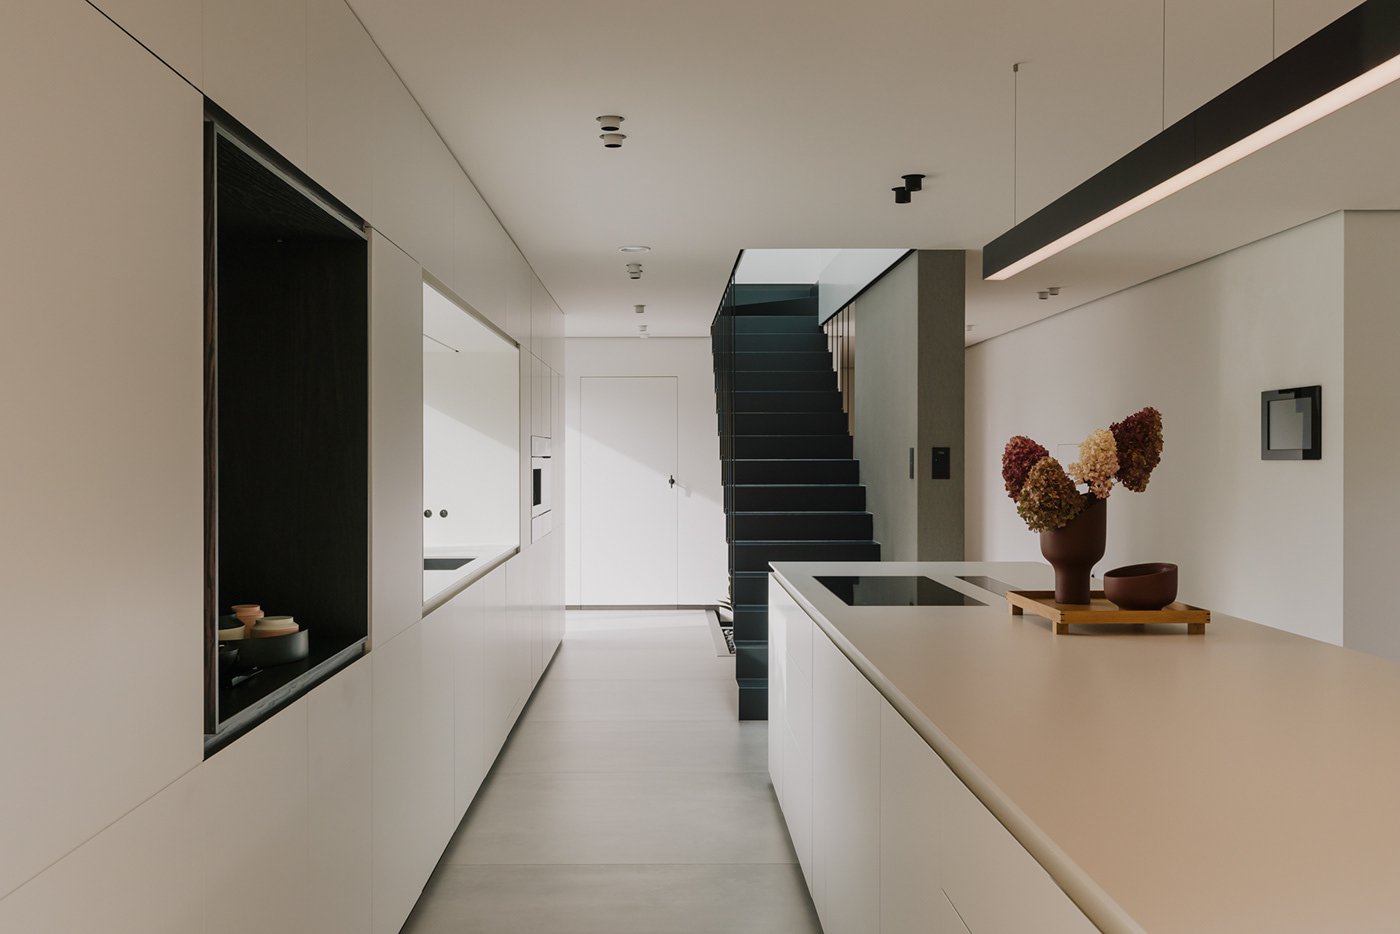 architectural design architecture bathroom design house Interior interiordesign kitchen minimal modern